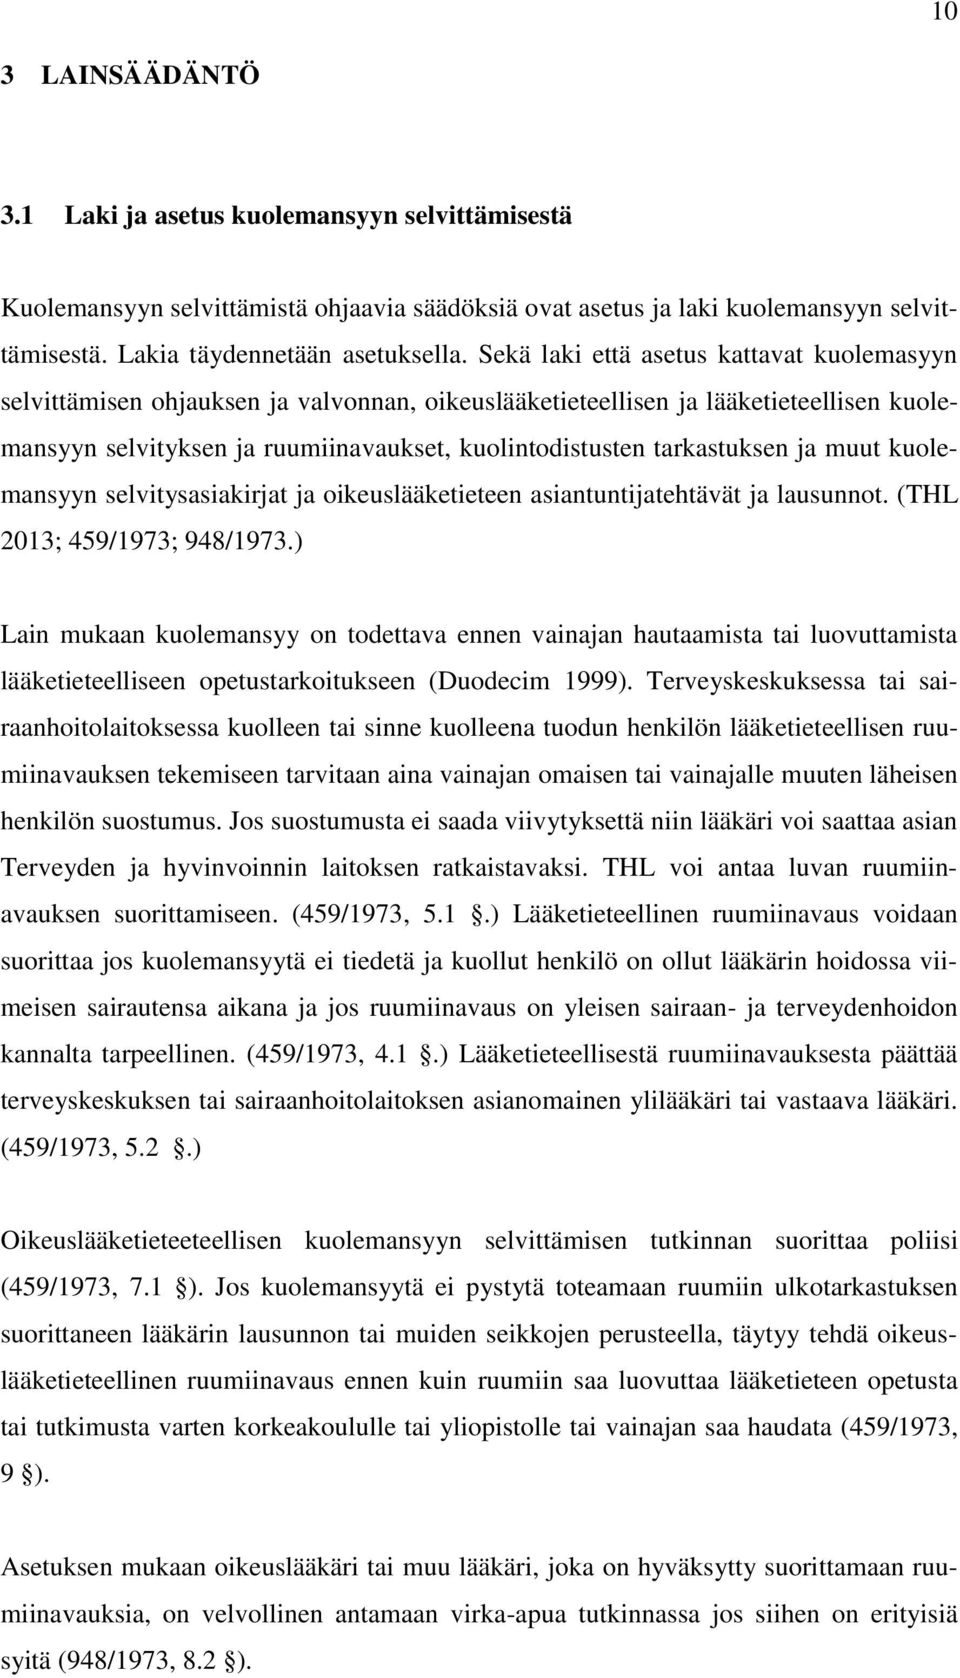 tarkastuksen ja muut kuolemansyyn selvitysasiakirjat ja oikeuslääketieteen asiantuntijatehtävät ja lausunnot. (THL 2013; 459/1973; 948/1973.